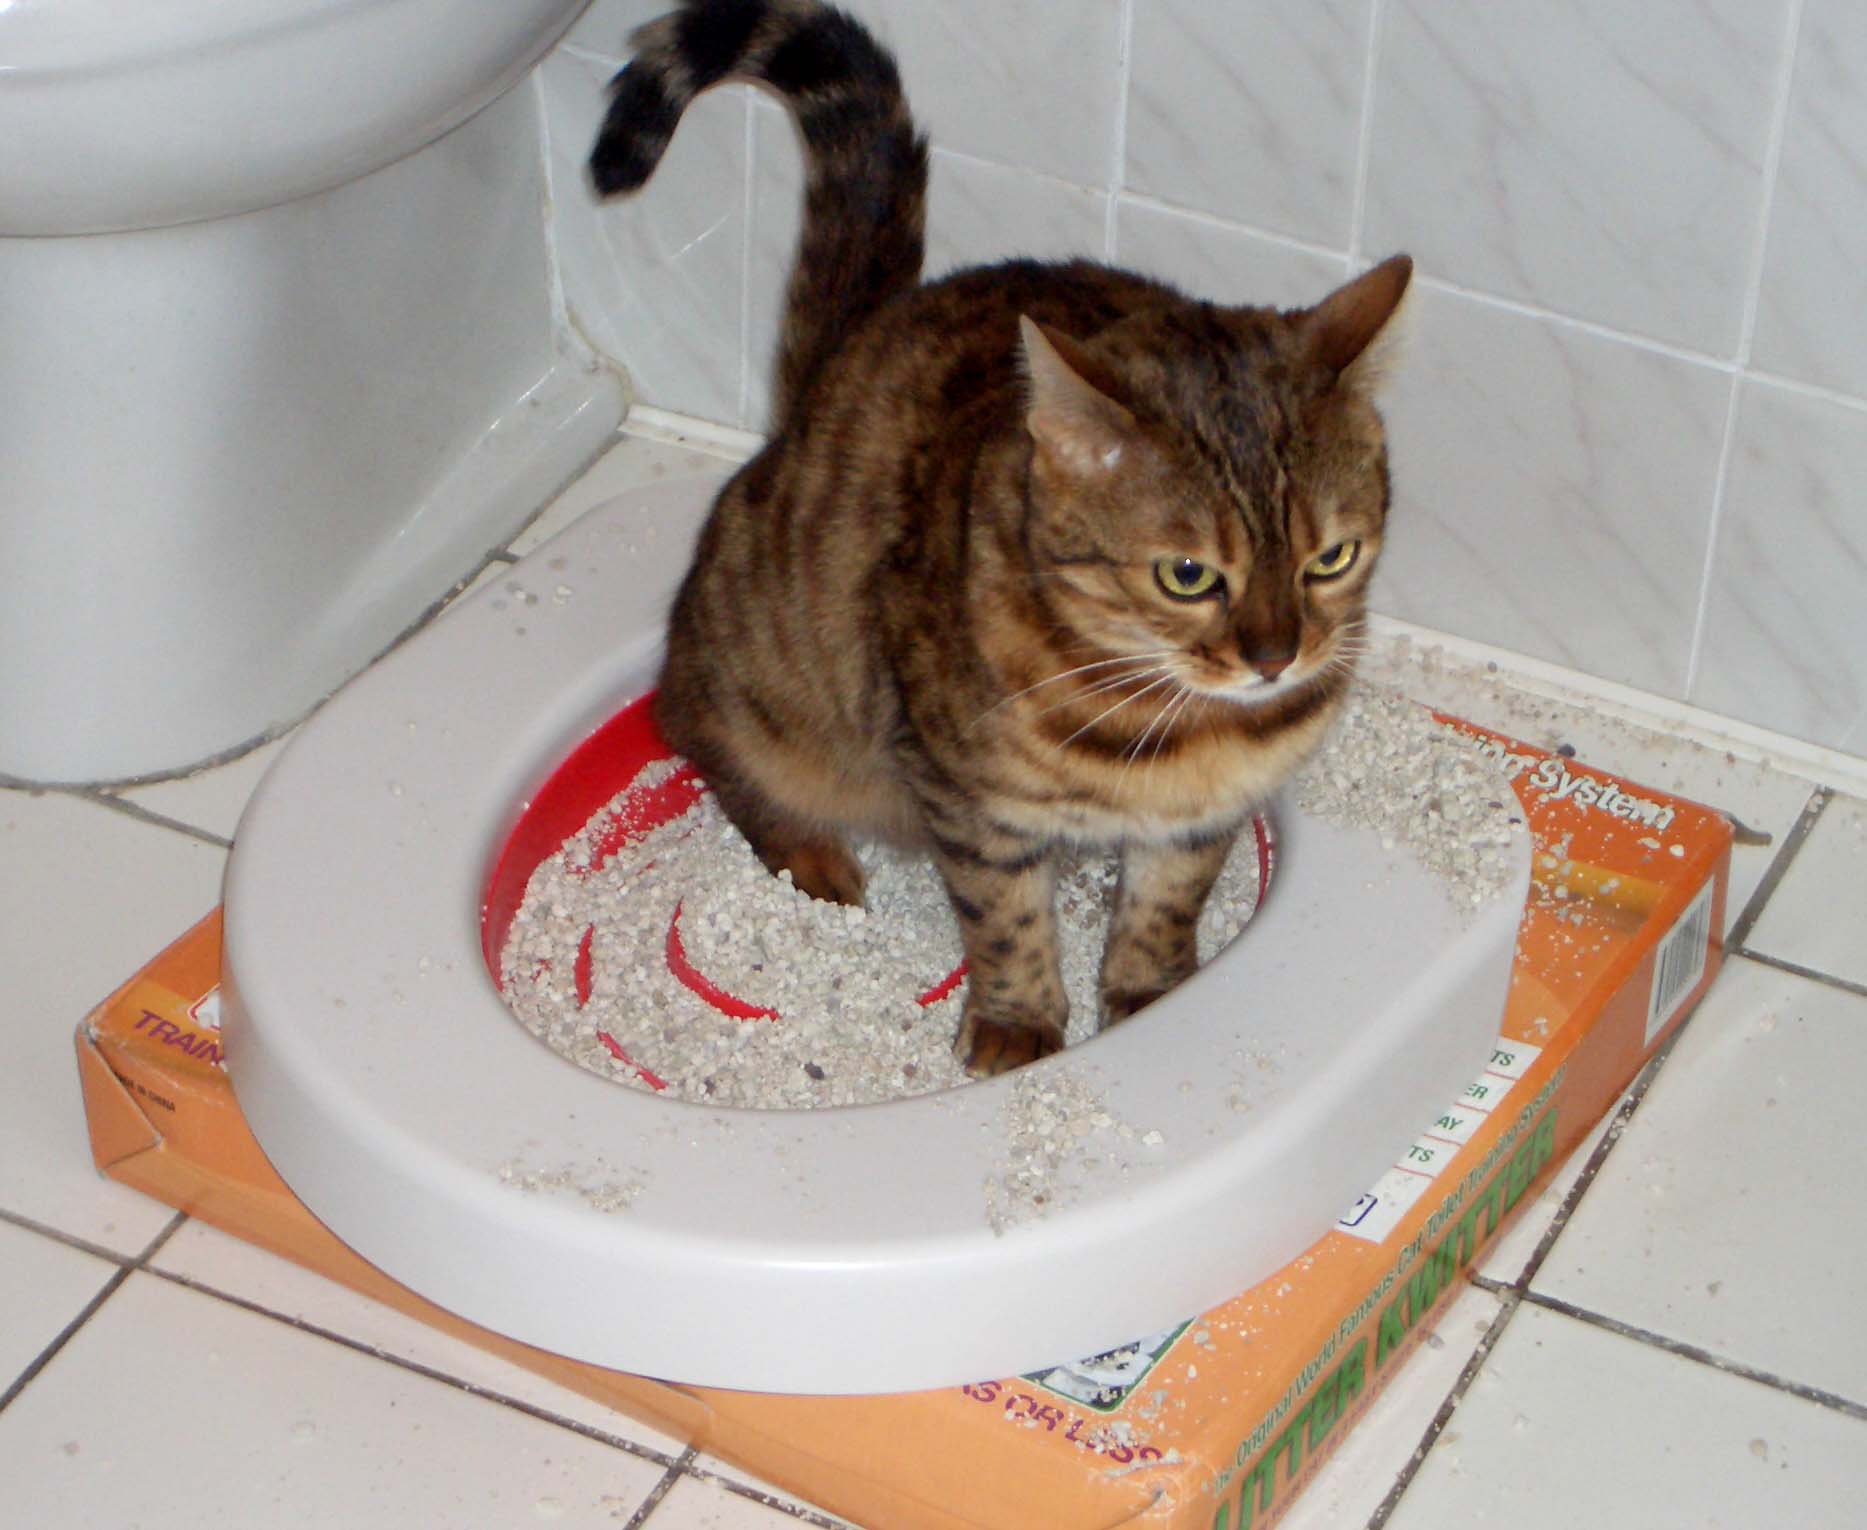 Кот часто ходит в туалет по-маленькому по чуть-чуть
кот часто ходит в туалет по-маленькому по чуть-чуть